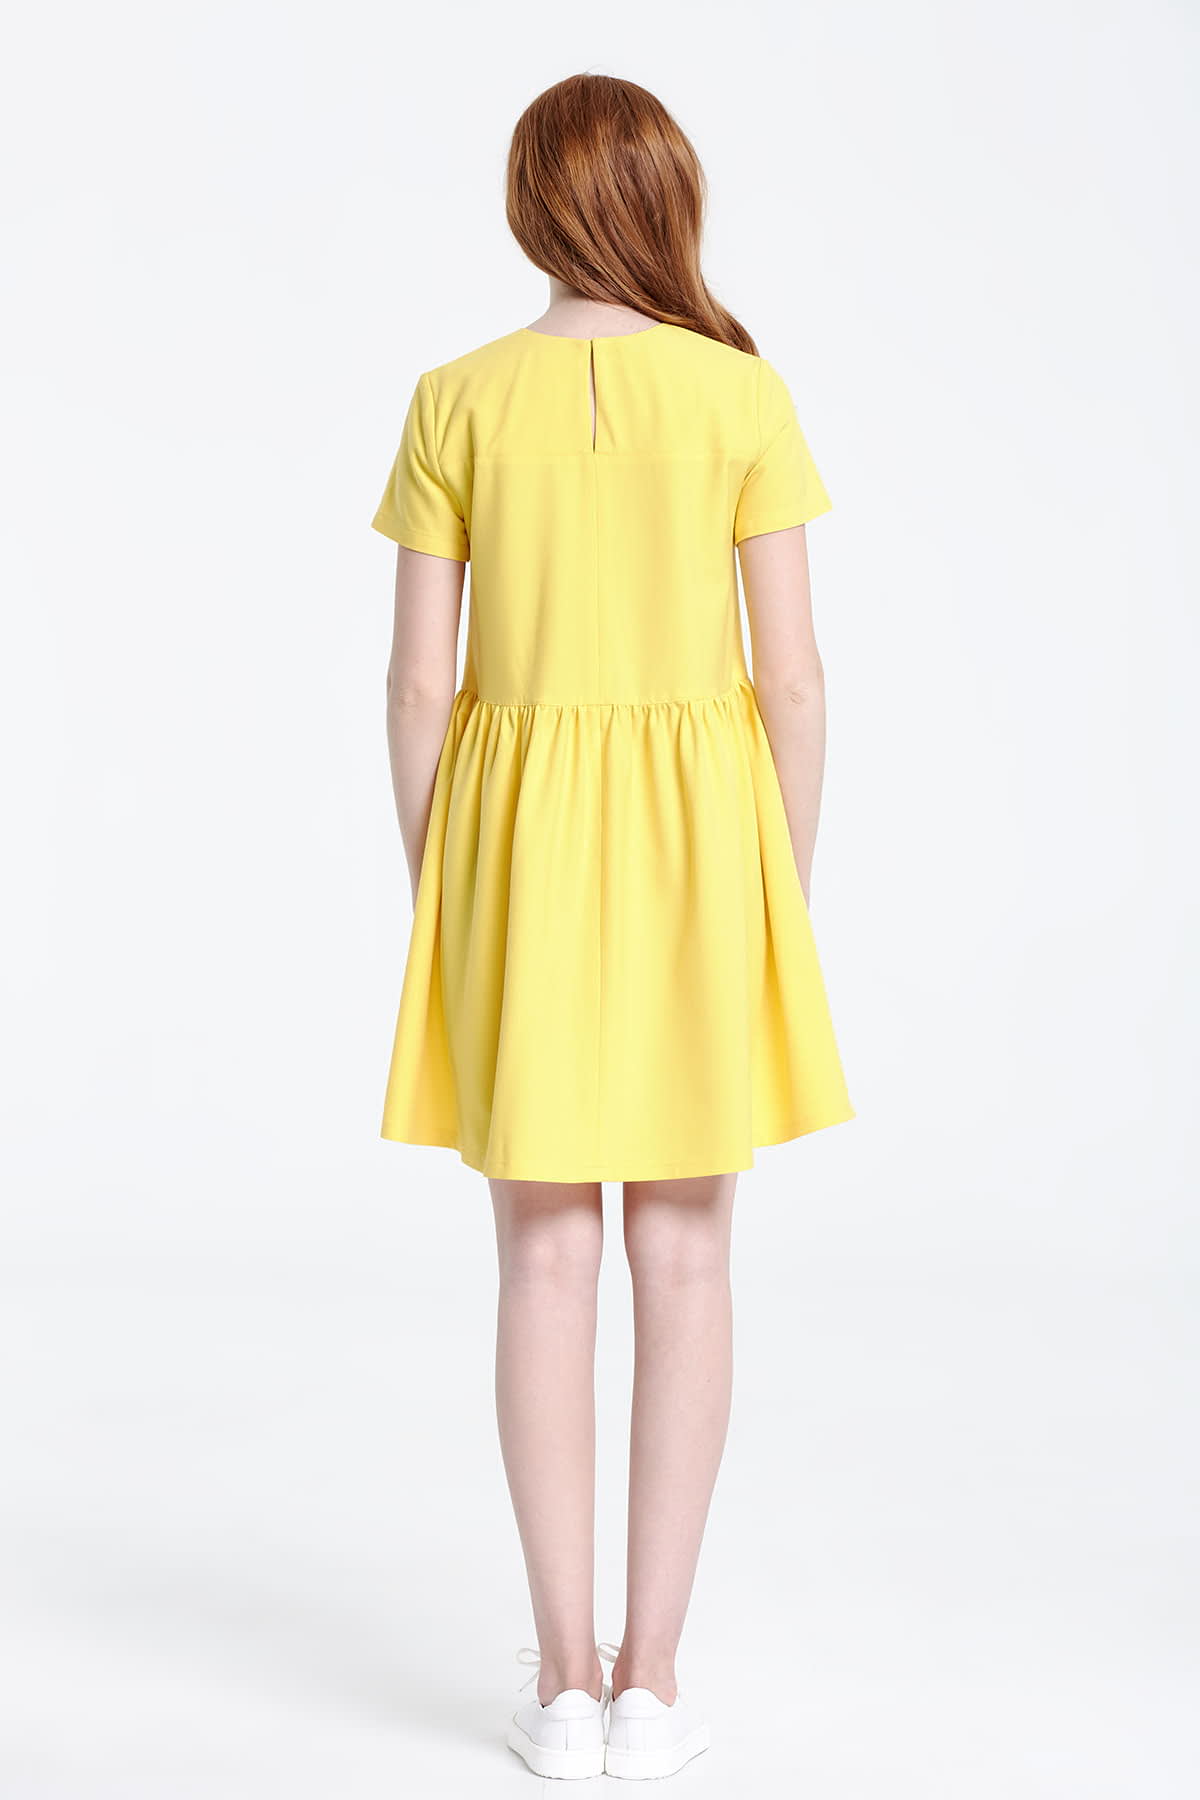 Swing yellow dress , photo 3